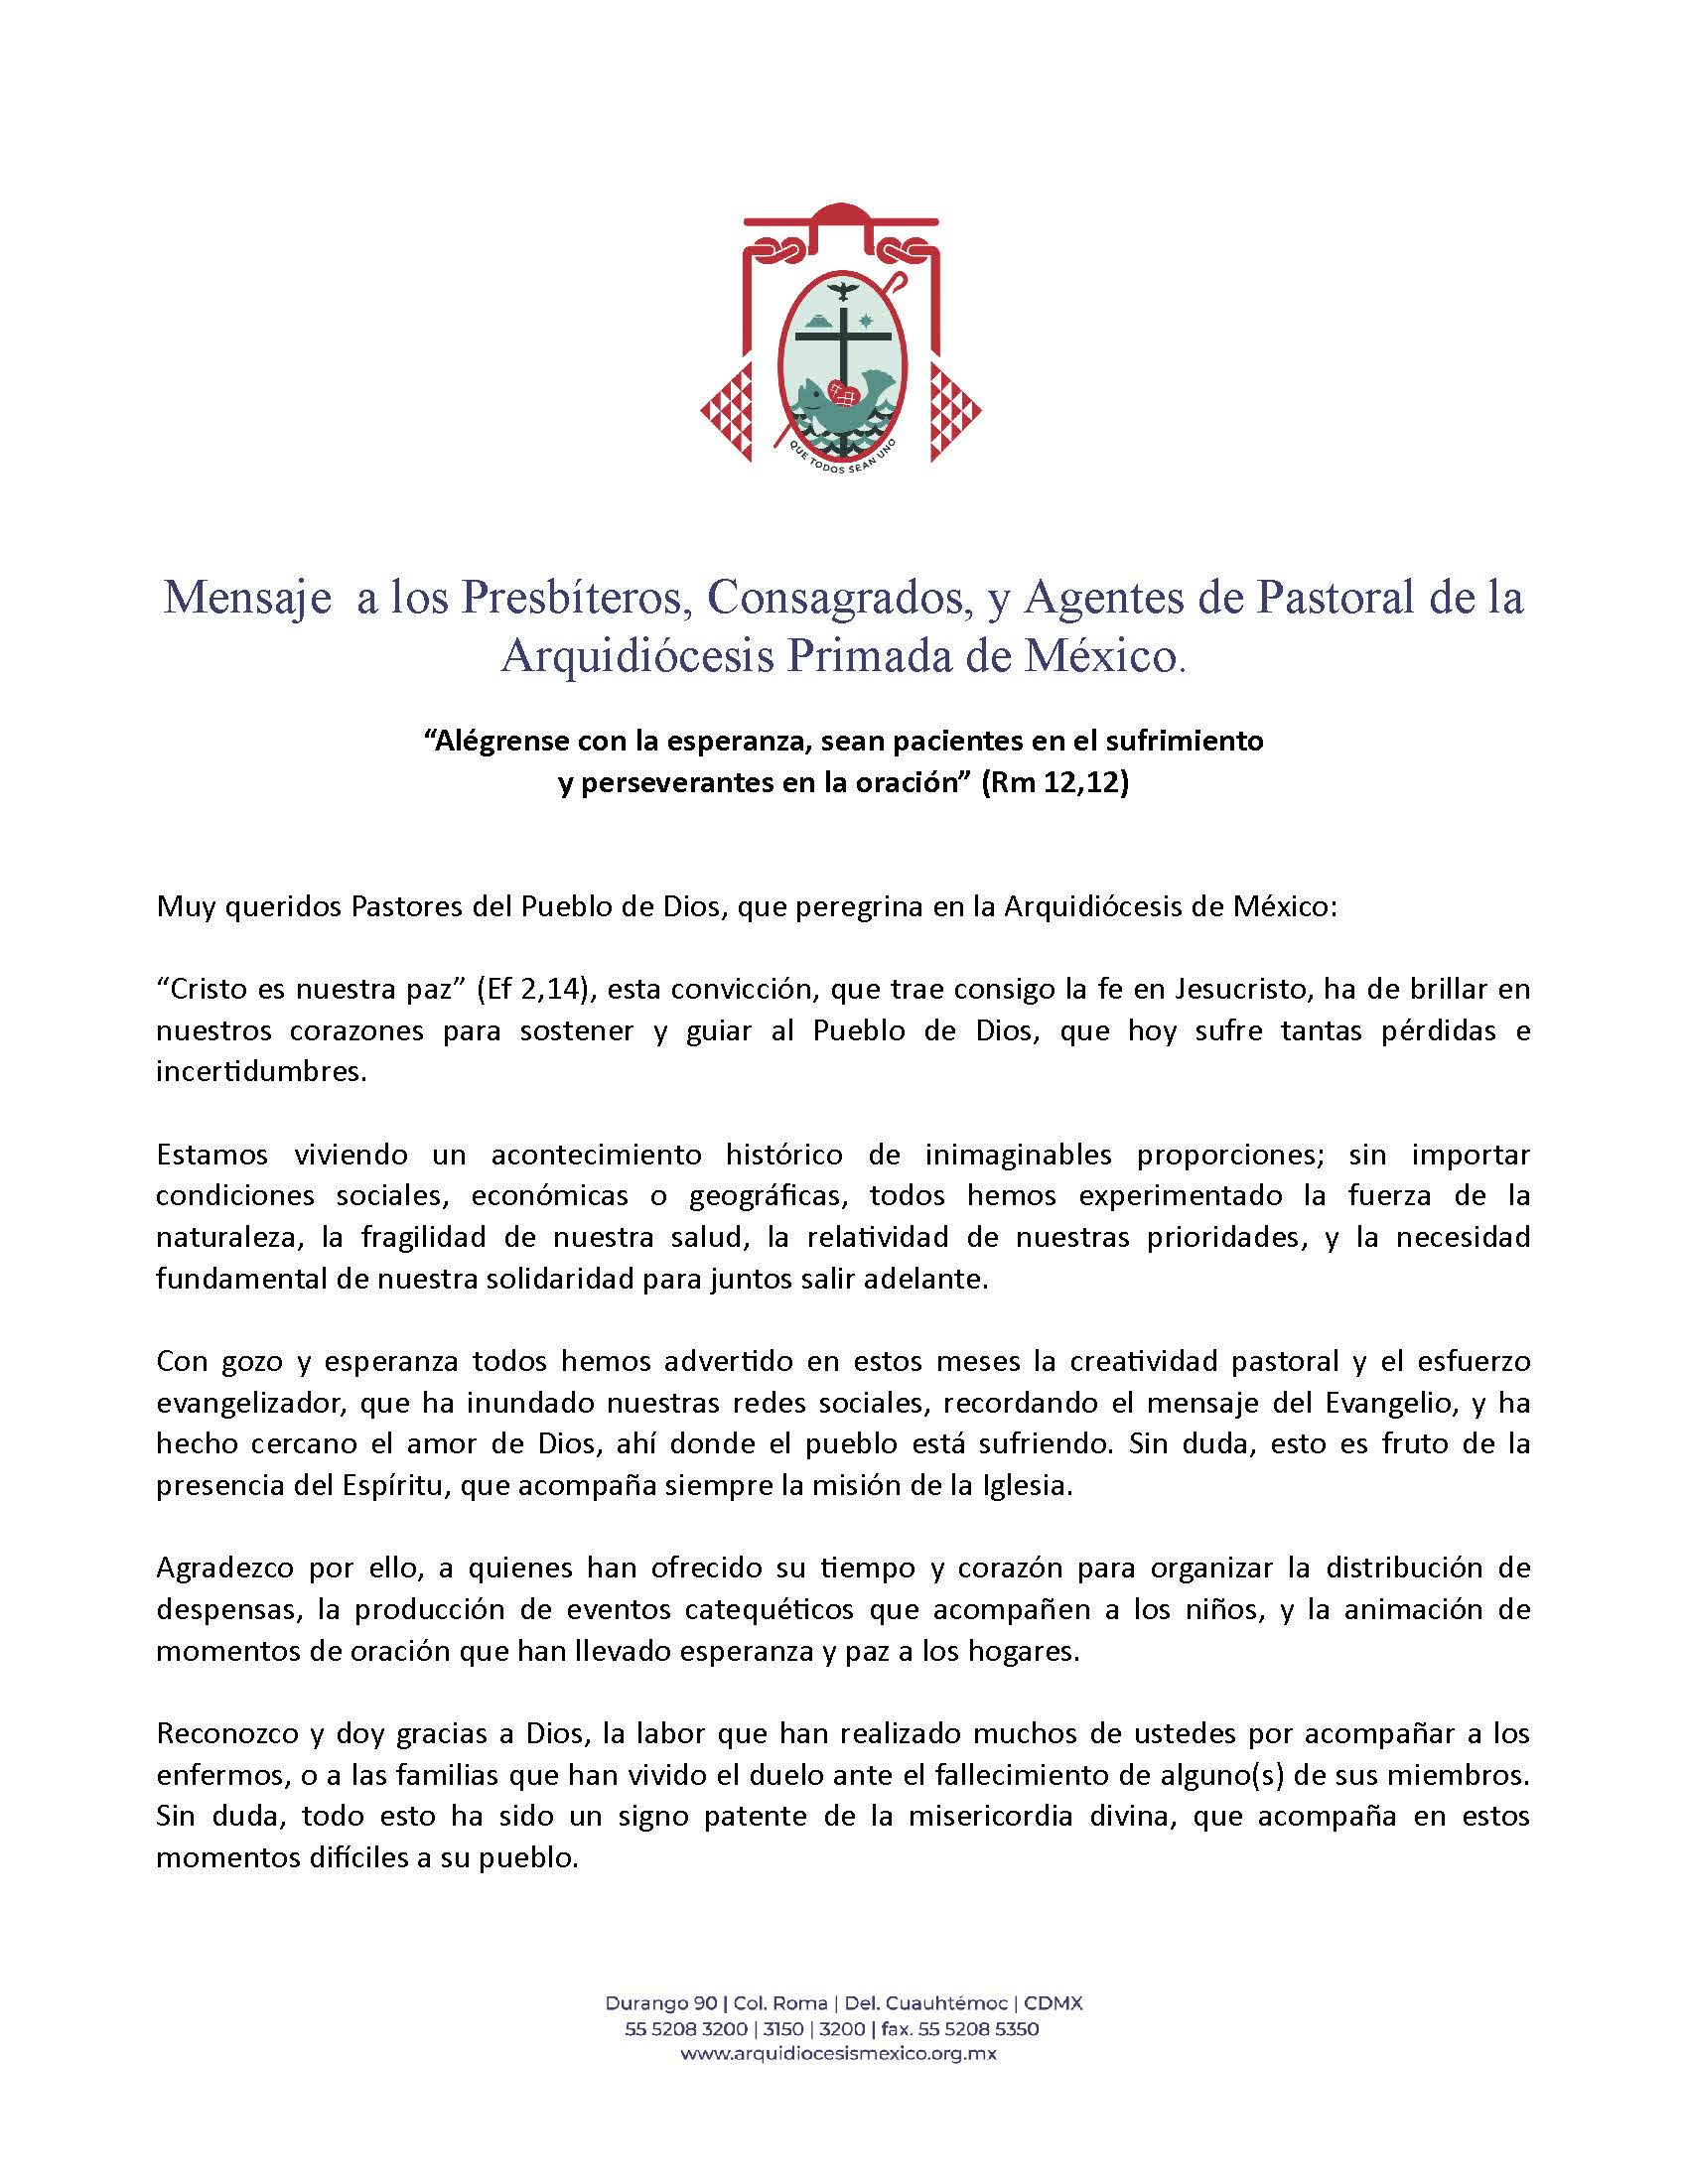 200802 Arquidiocesis Primada de Mexico Mensaje a Presbiteros Consagrados y Agentes de Pastoral Página 1